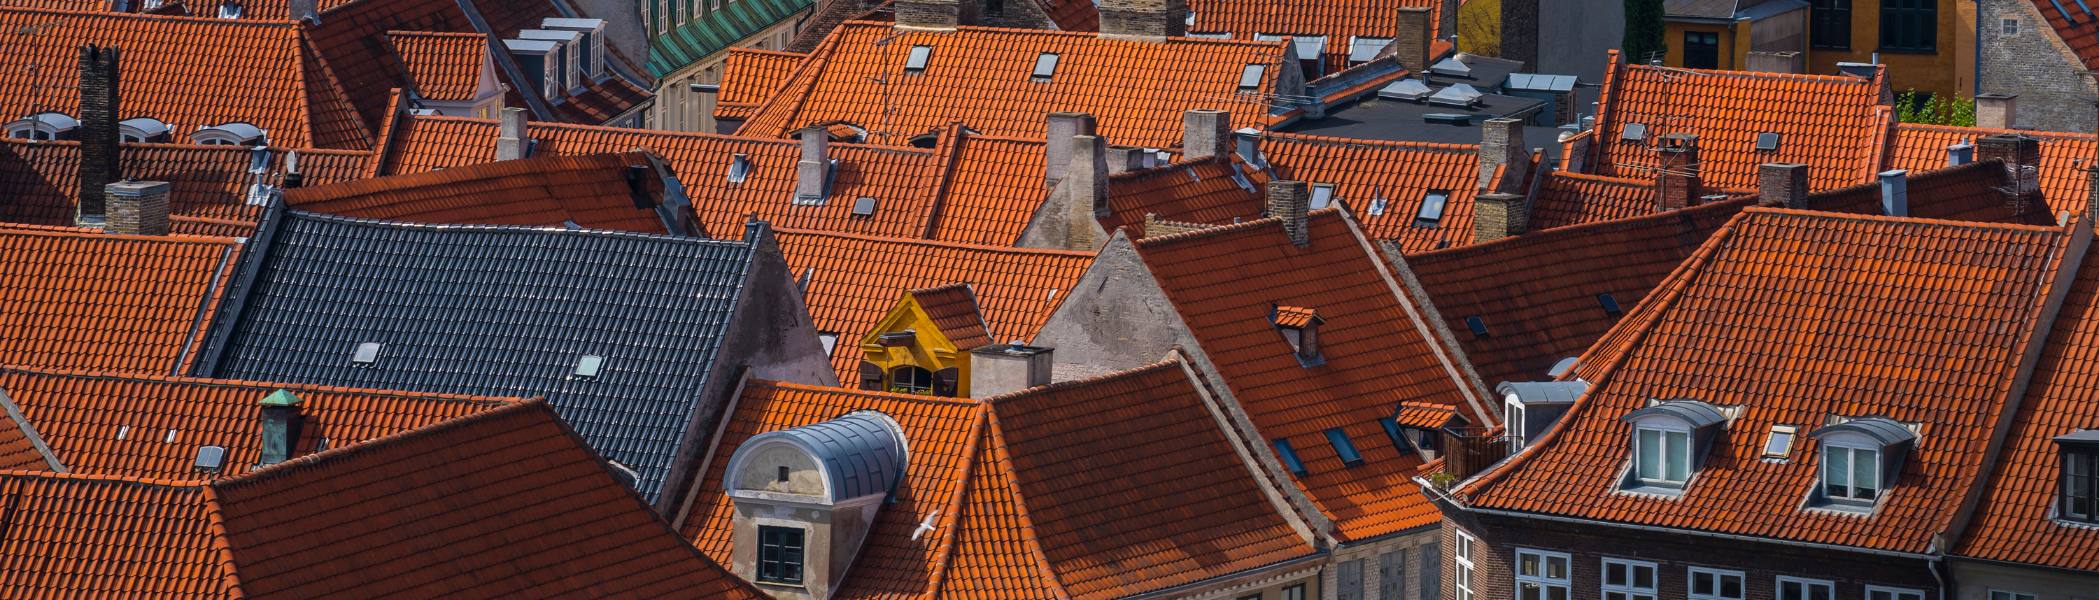 Image of roofs of houses in Copenhagen, Denmark.